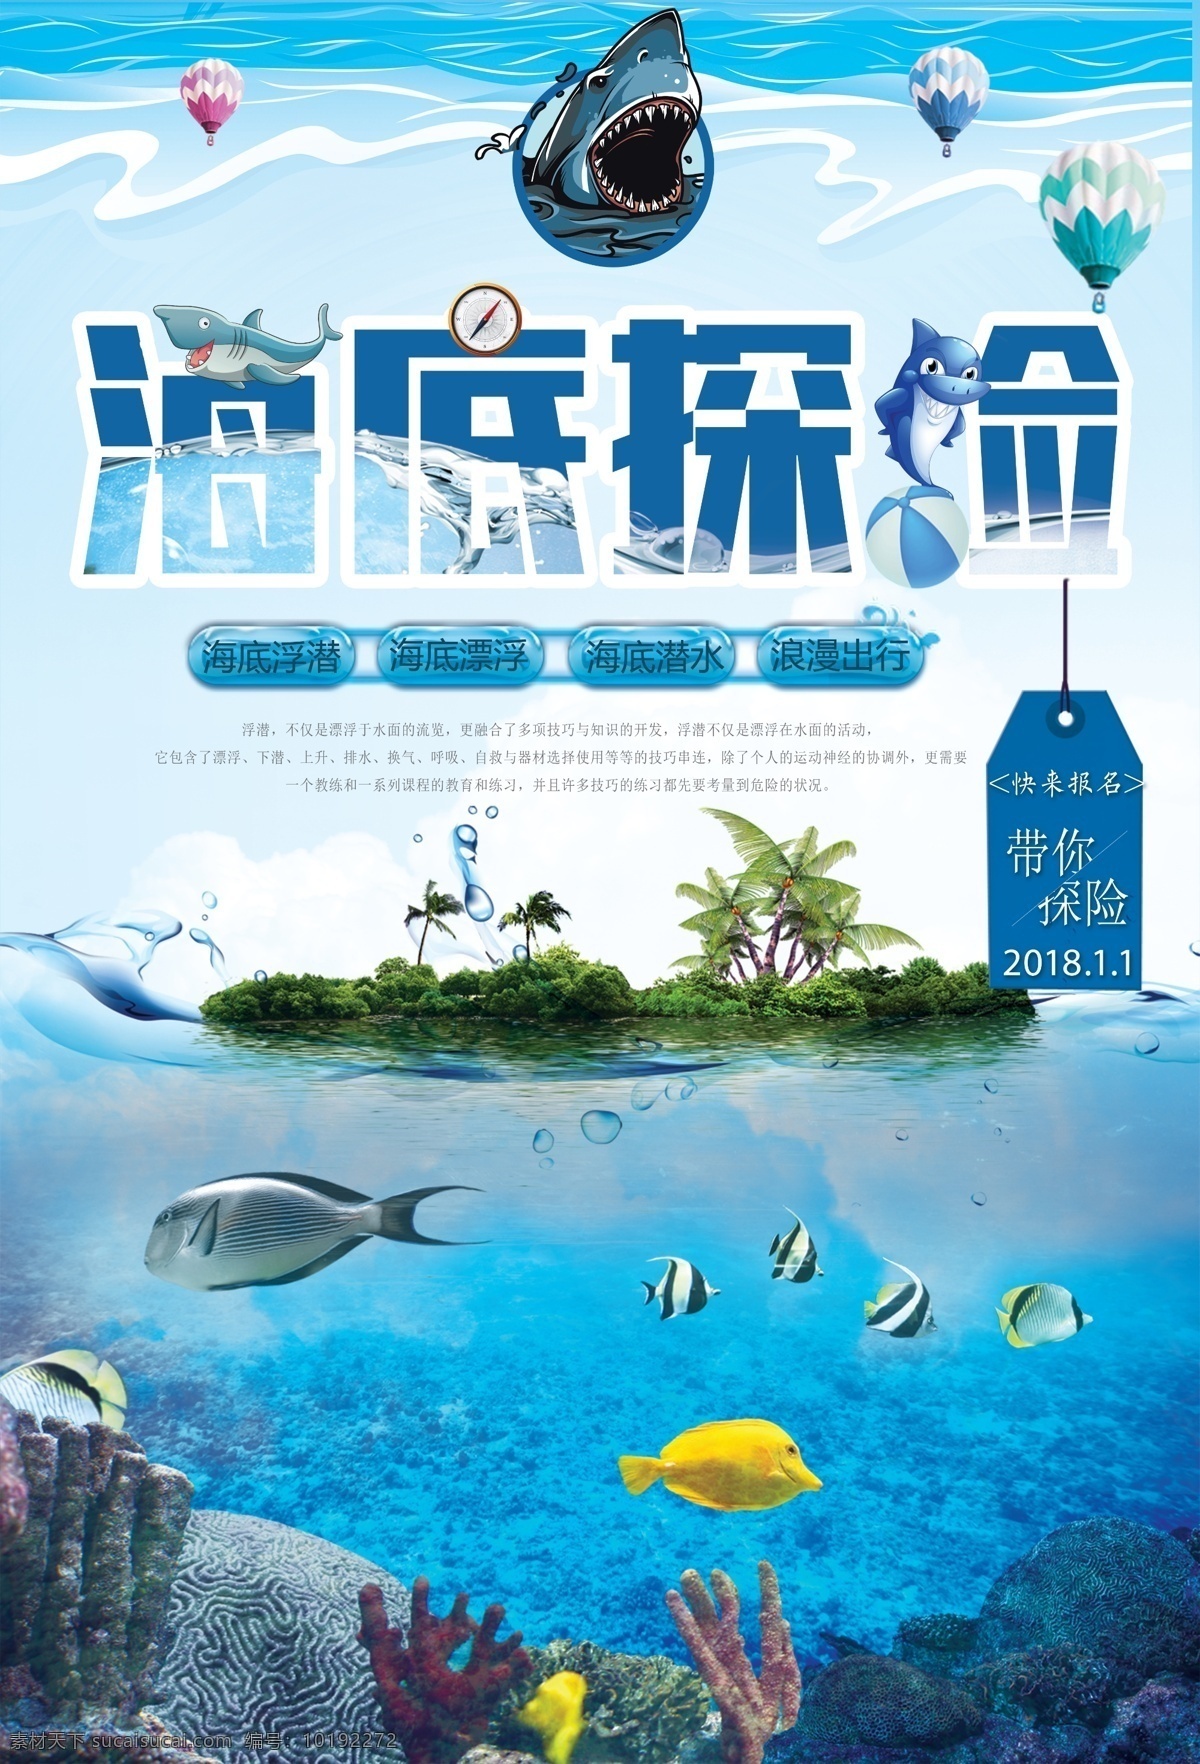 卡通 旅游 海底 探险 海报 浮潜 潜水 马尔代夫 海岛 培训 海洋 海洋世界 鲨鱼 游泳 运动 健身 浪漫 展板模板